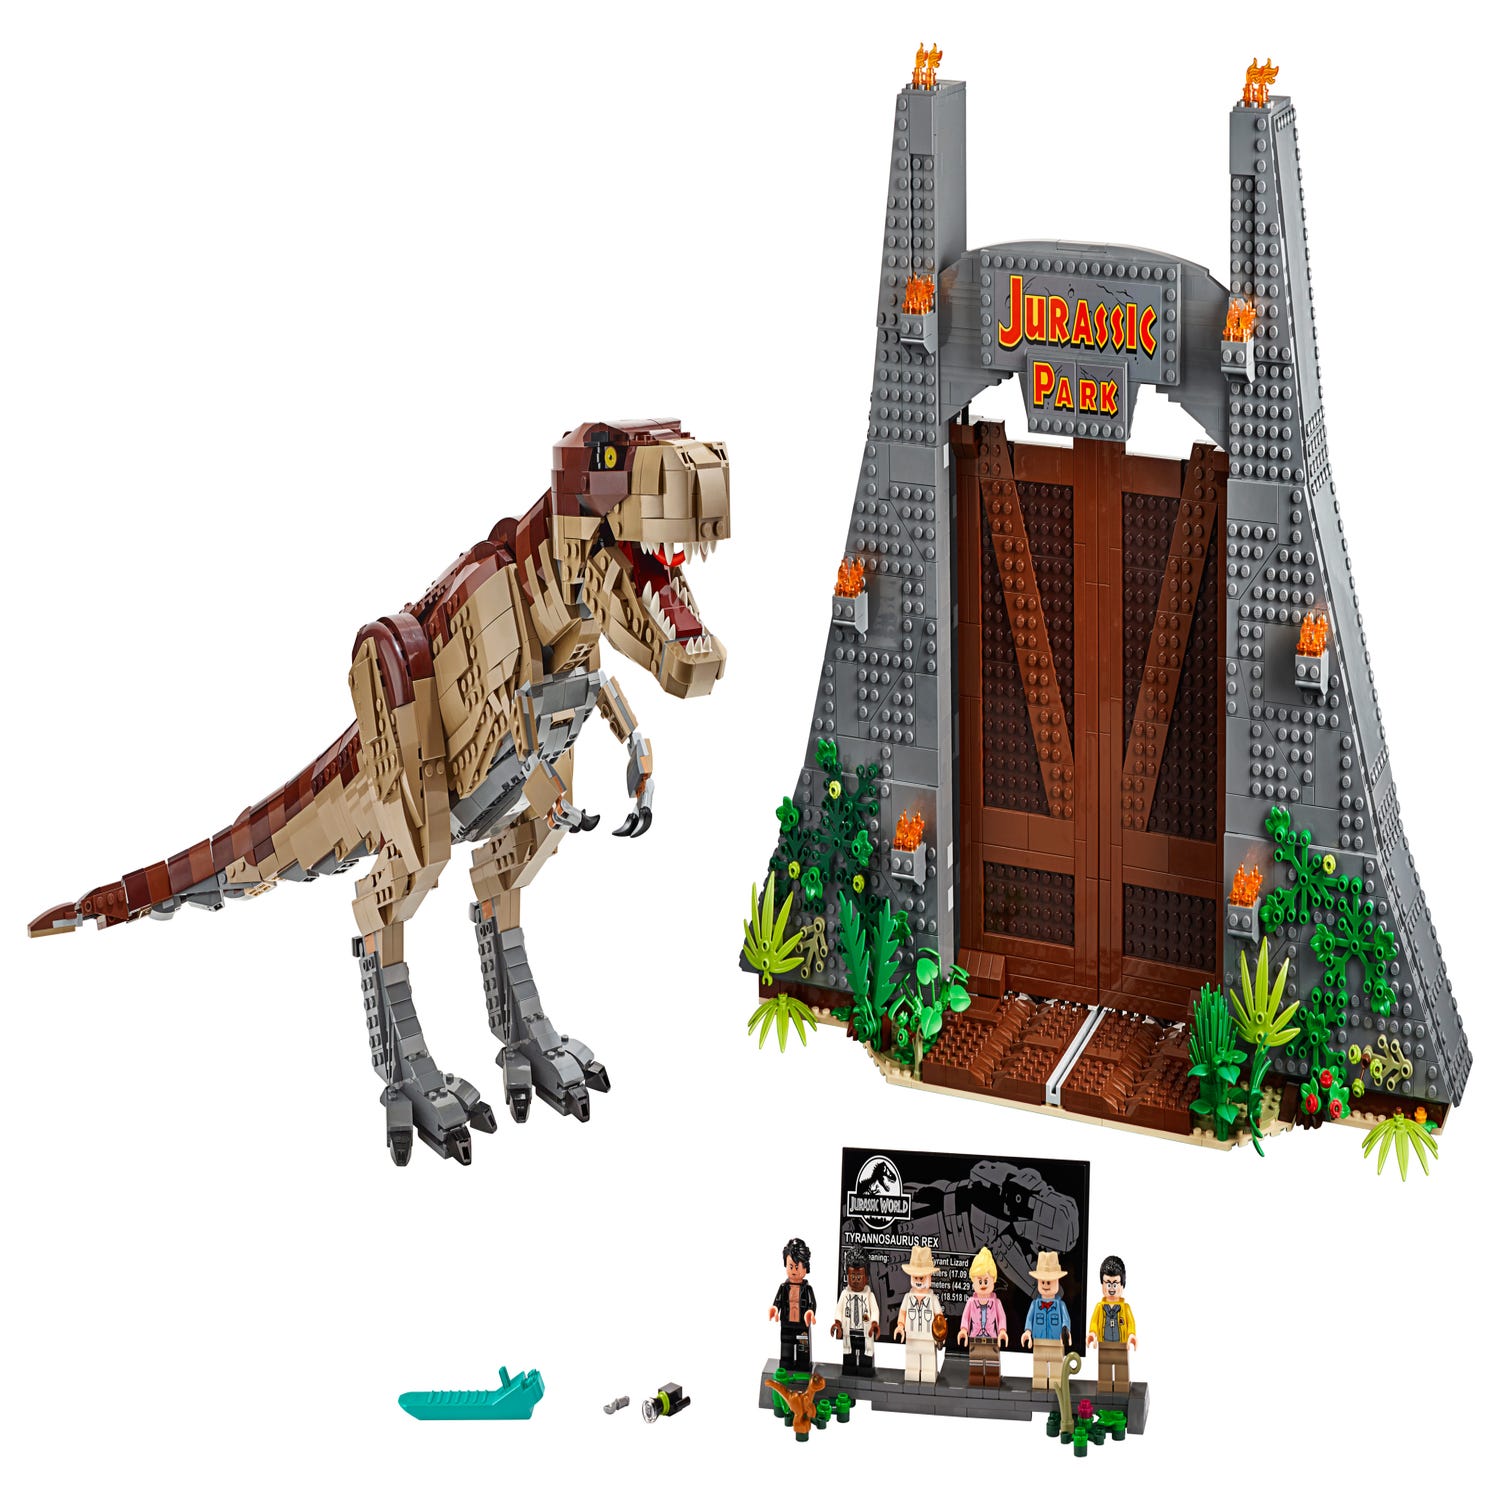 LEGO Jurassic World: T-Rex Transport (75933) Toys - Zavvi US